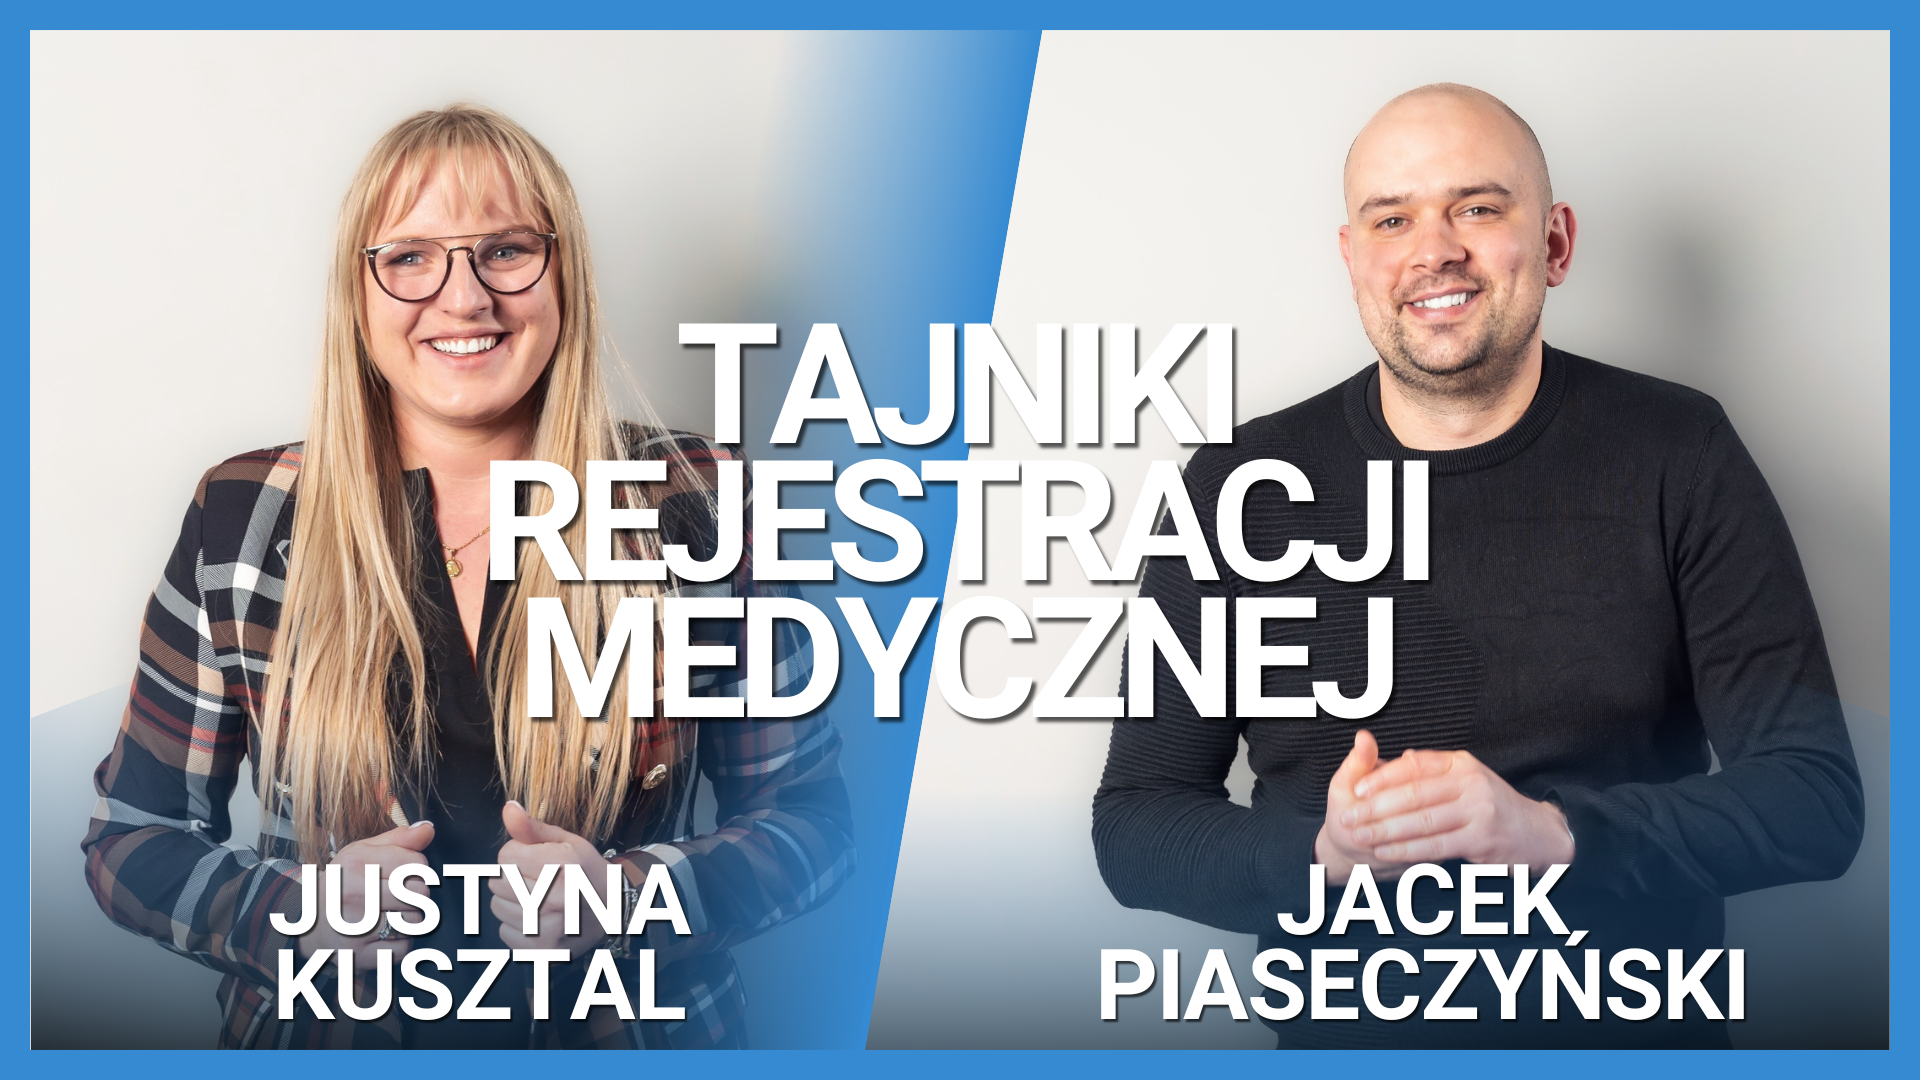 Tajniki rejestracji medycznej- wywiad Jacek Piaseczyński i Justyna Kusztal